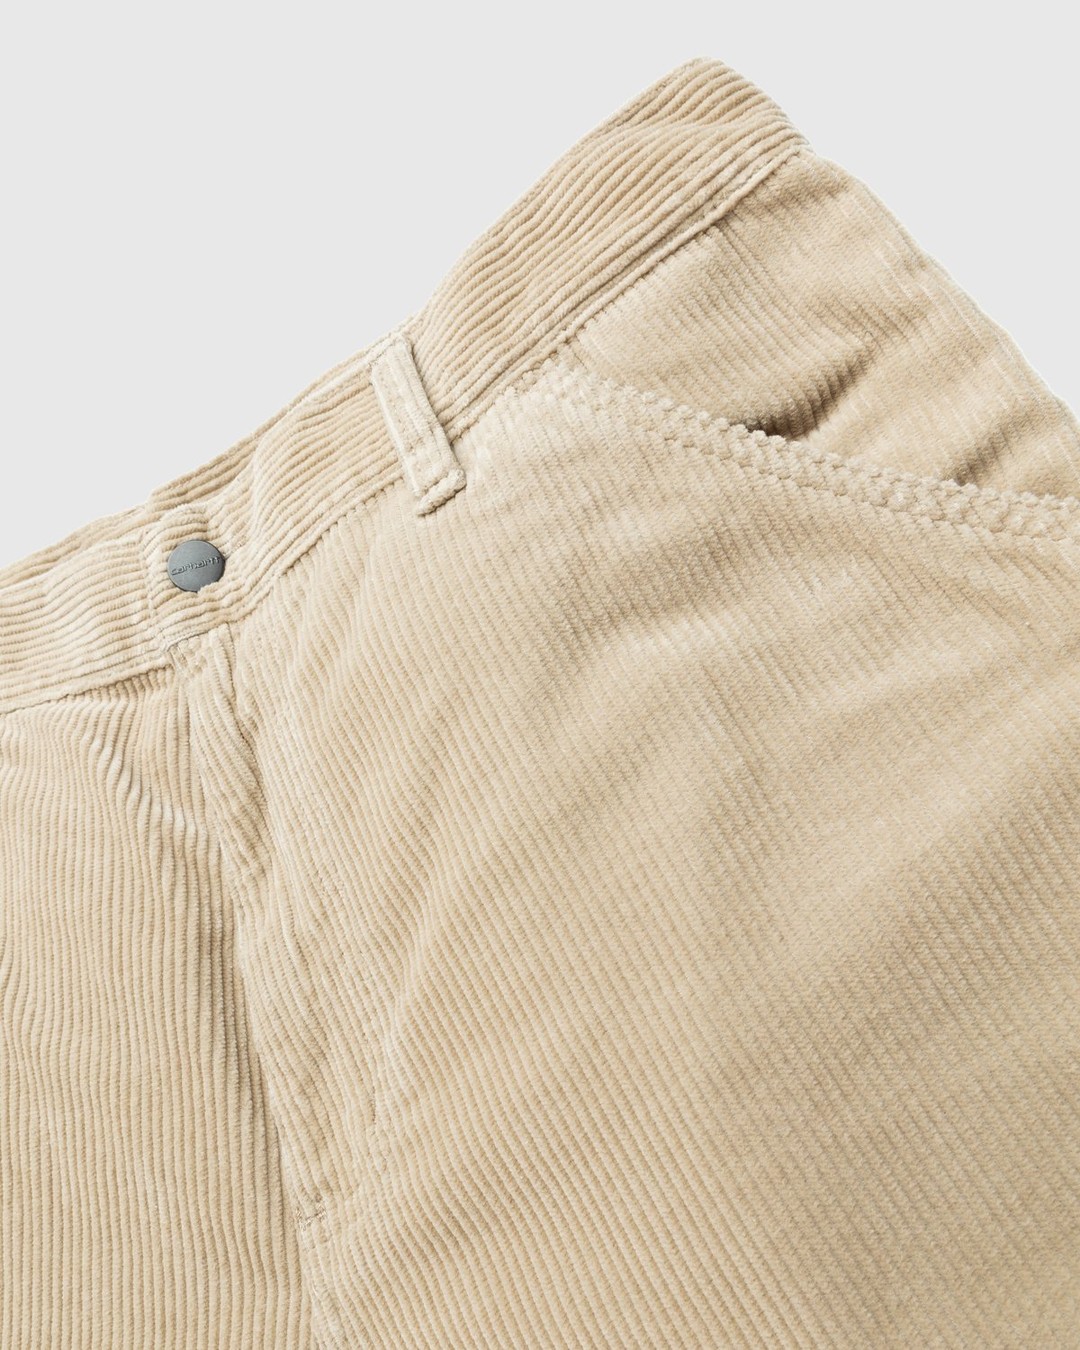 Carhartt WIP – Ruck Single Knee Pant Beige - Pants - Brown - Image 5